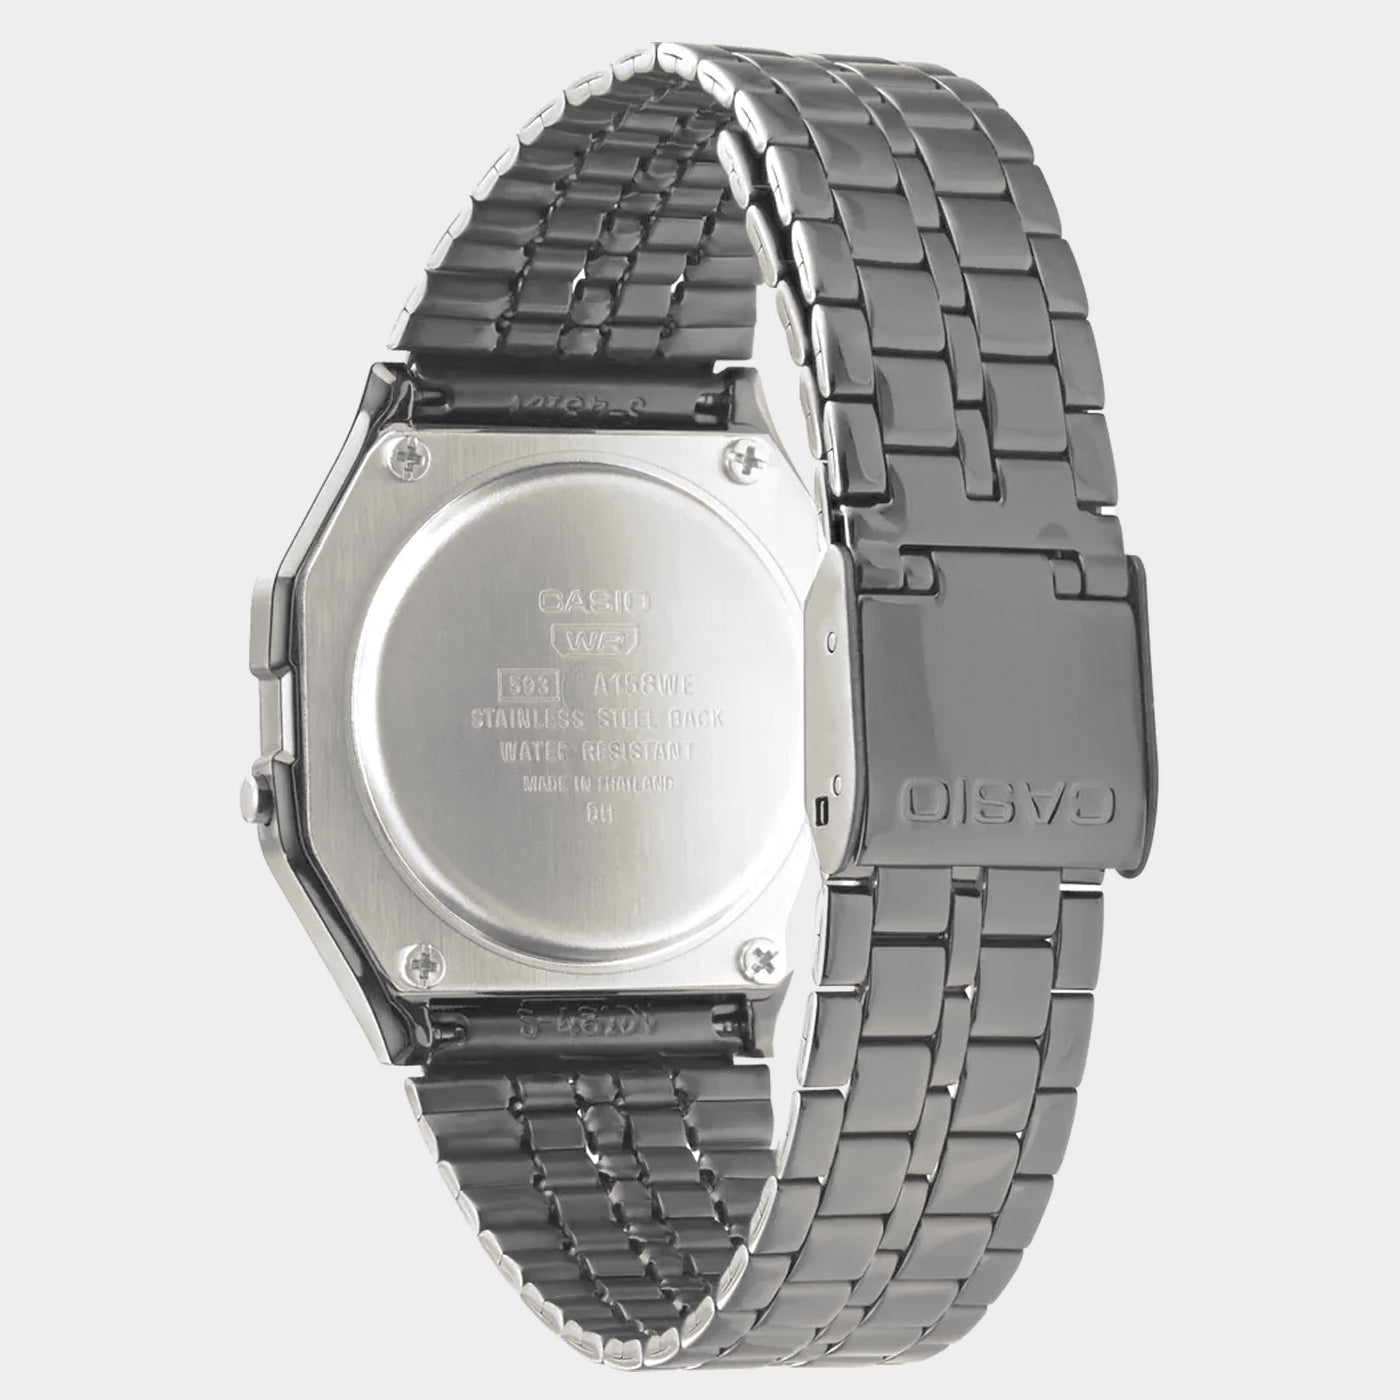 Casio - Vintage Digital Watch - Dark Grey/Black (A158WETB-1A)